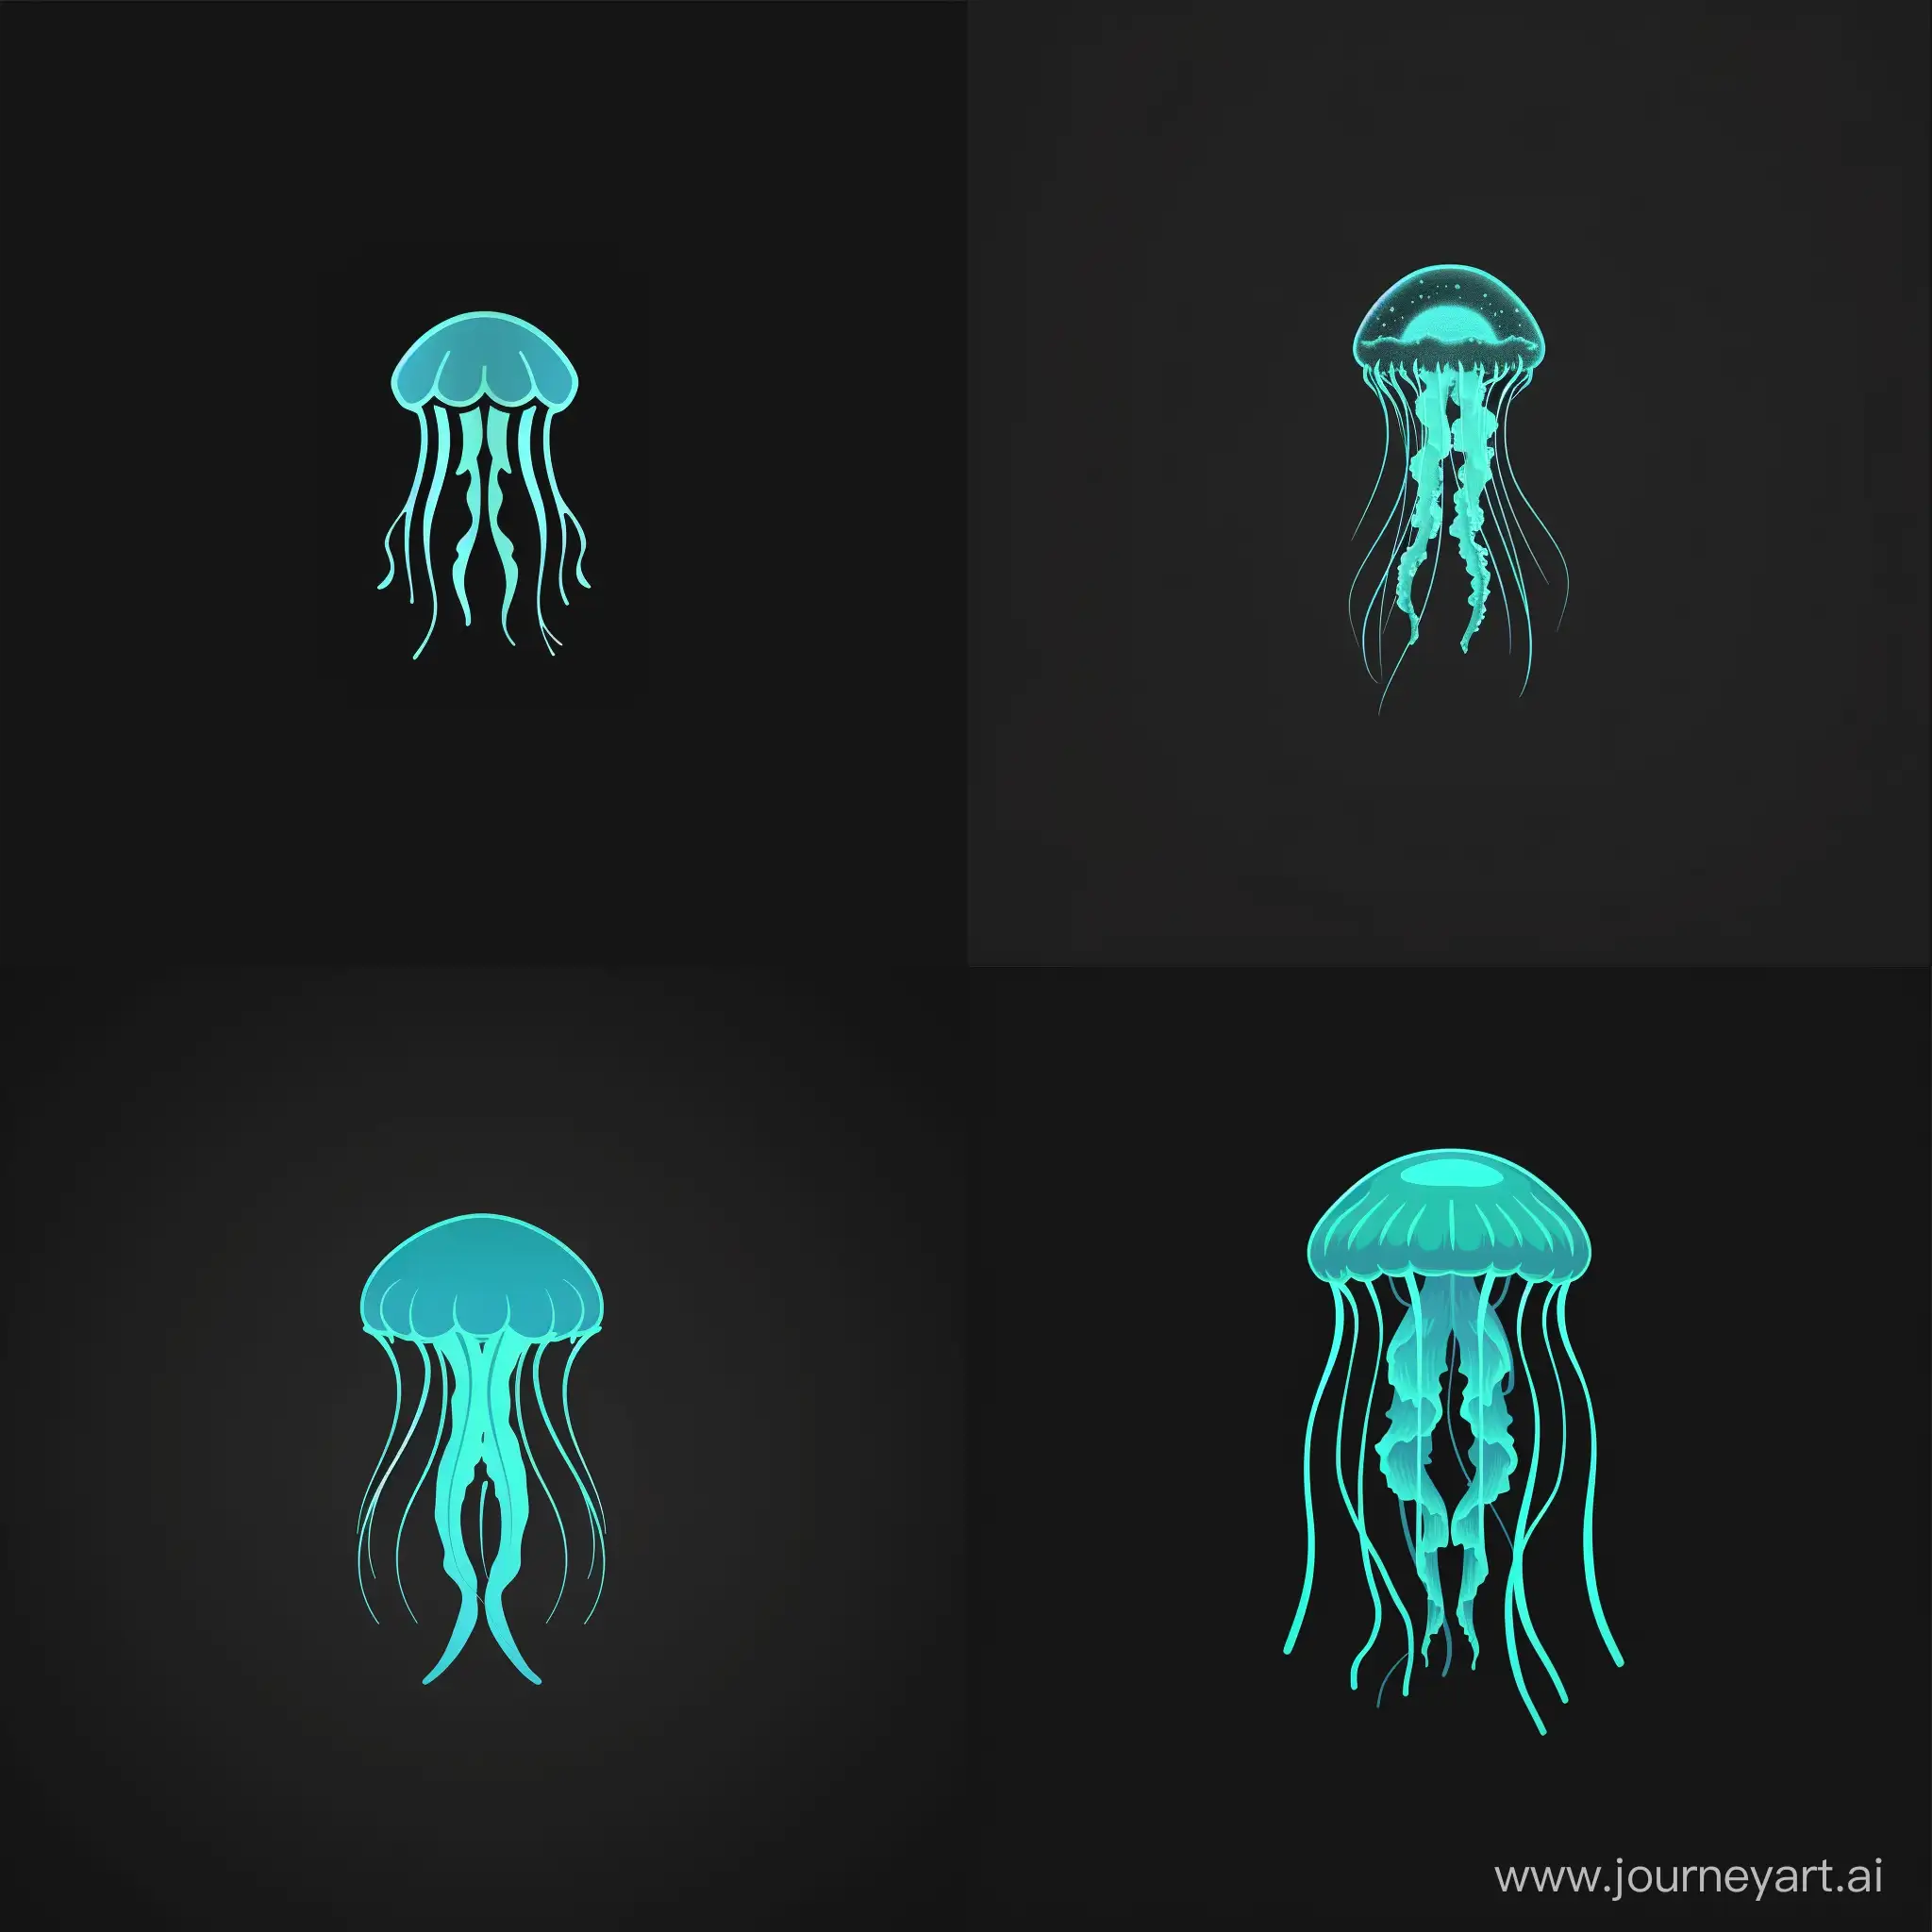 создать логотип, где в центре будет изображен кислотно-синяя медуза на черном фоне. настроение у медузы спокойное. логотип должен быть немного минималистичным, а медуза должна немного светиться зеленым свечением.